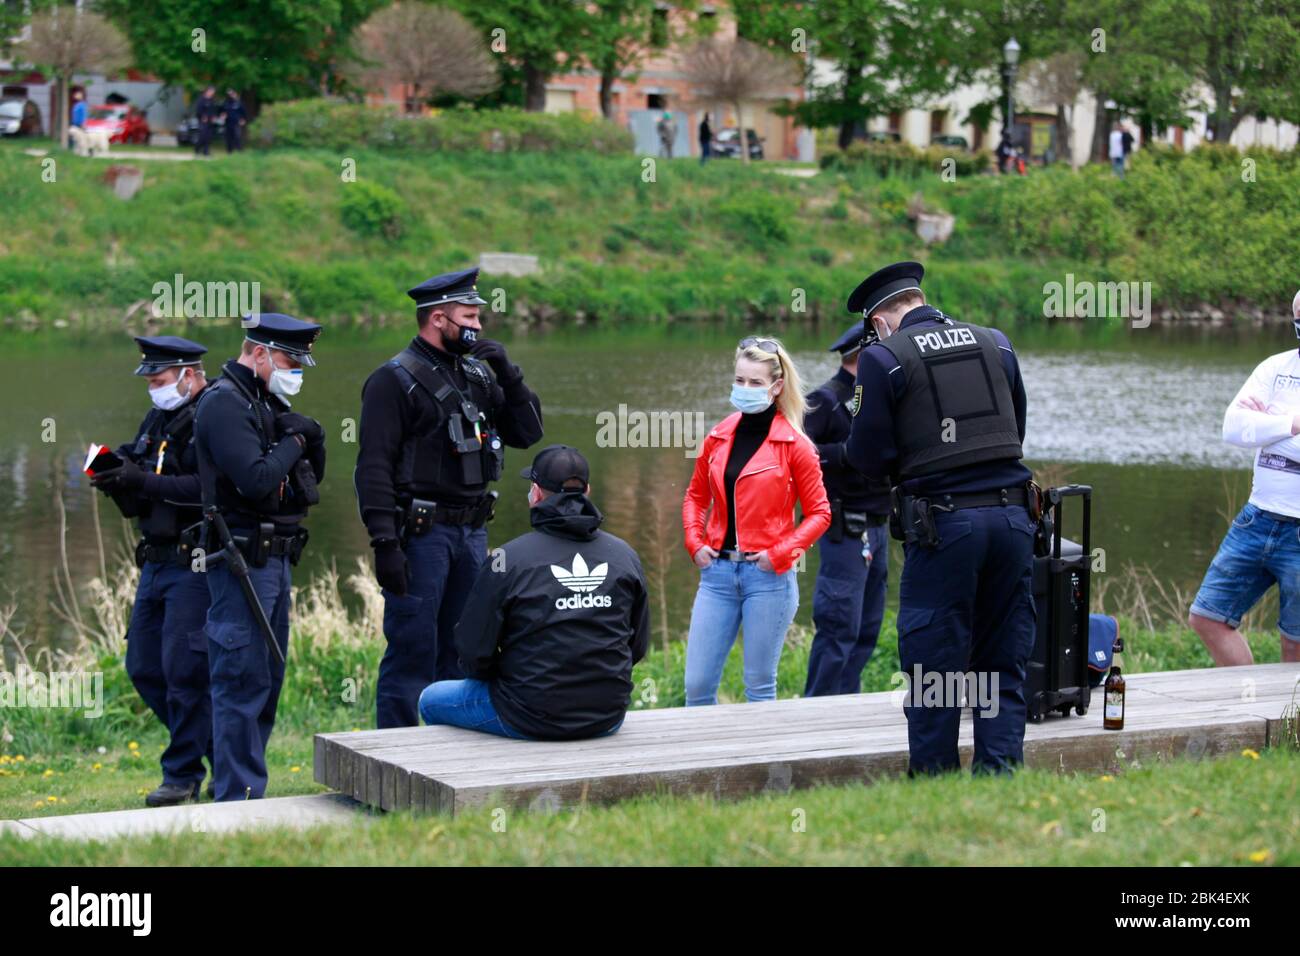 Eine Veranstaltung im Uferpark an der polnischen Grenze zu Zgorzelec wird von der Polizei aufgelöst.Görlitz 01.05.2020 Foto de stock